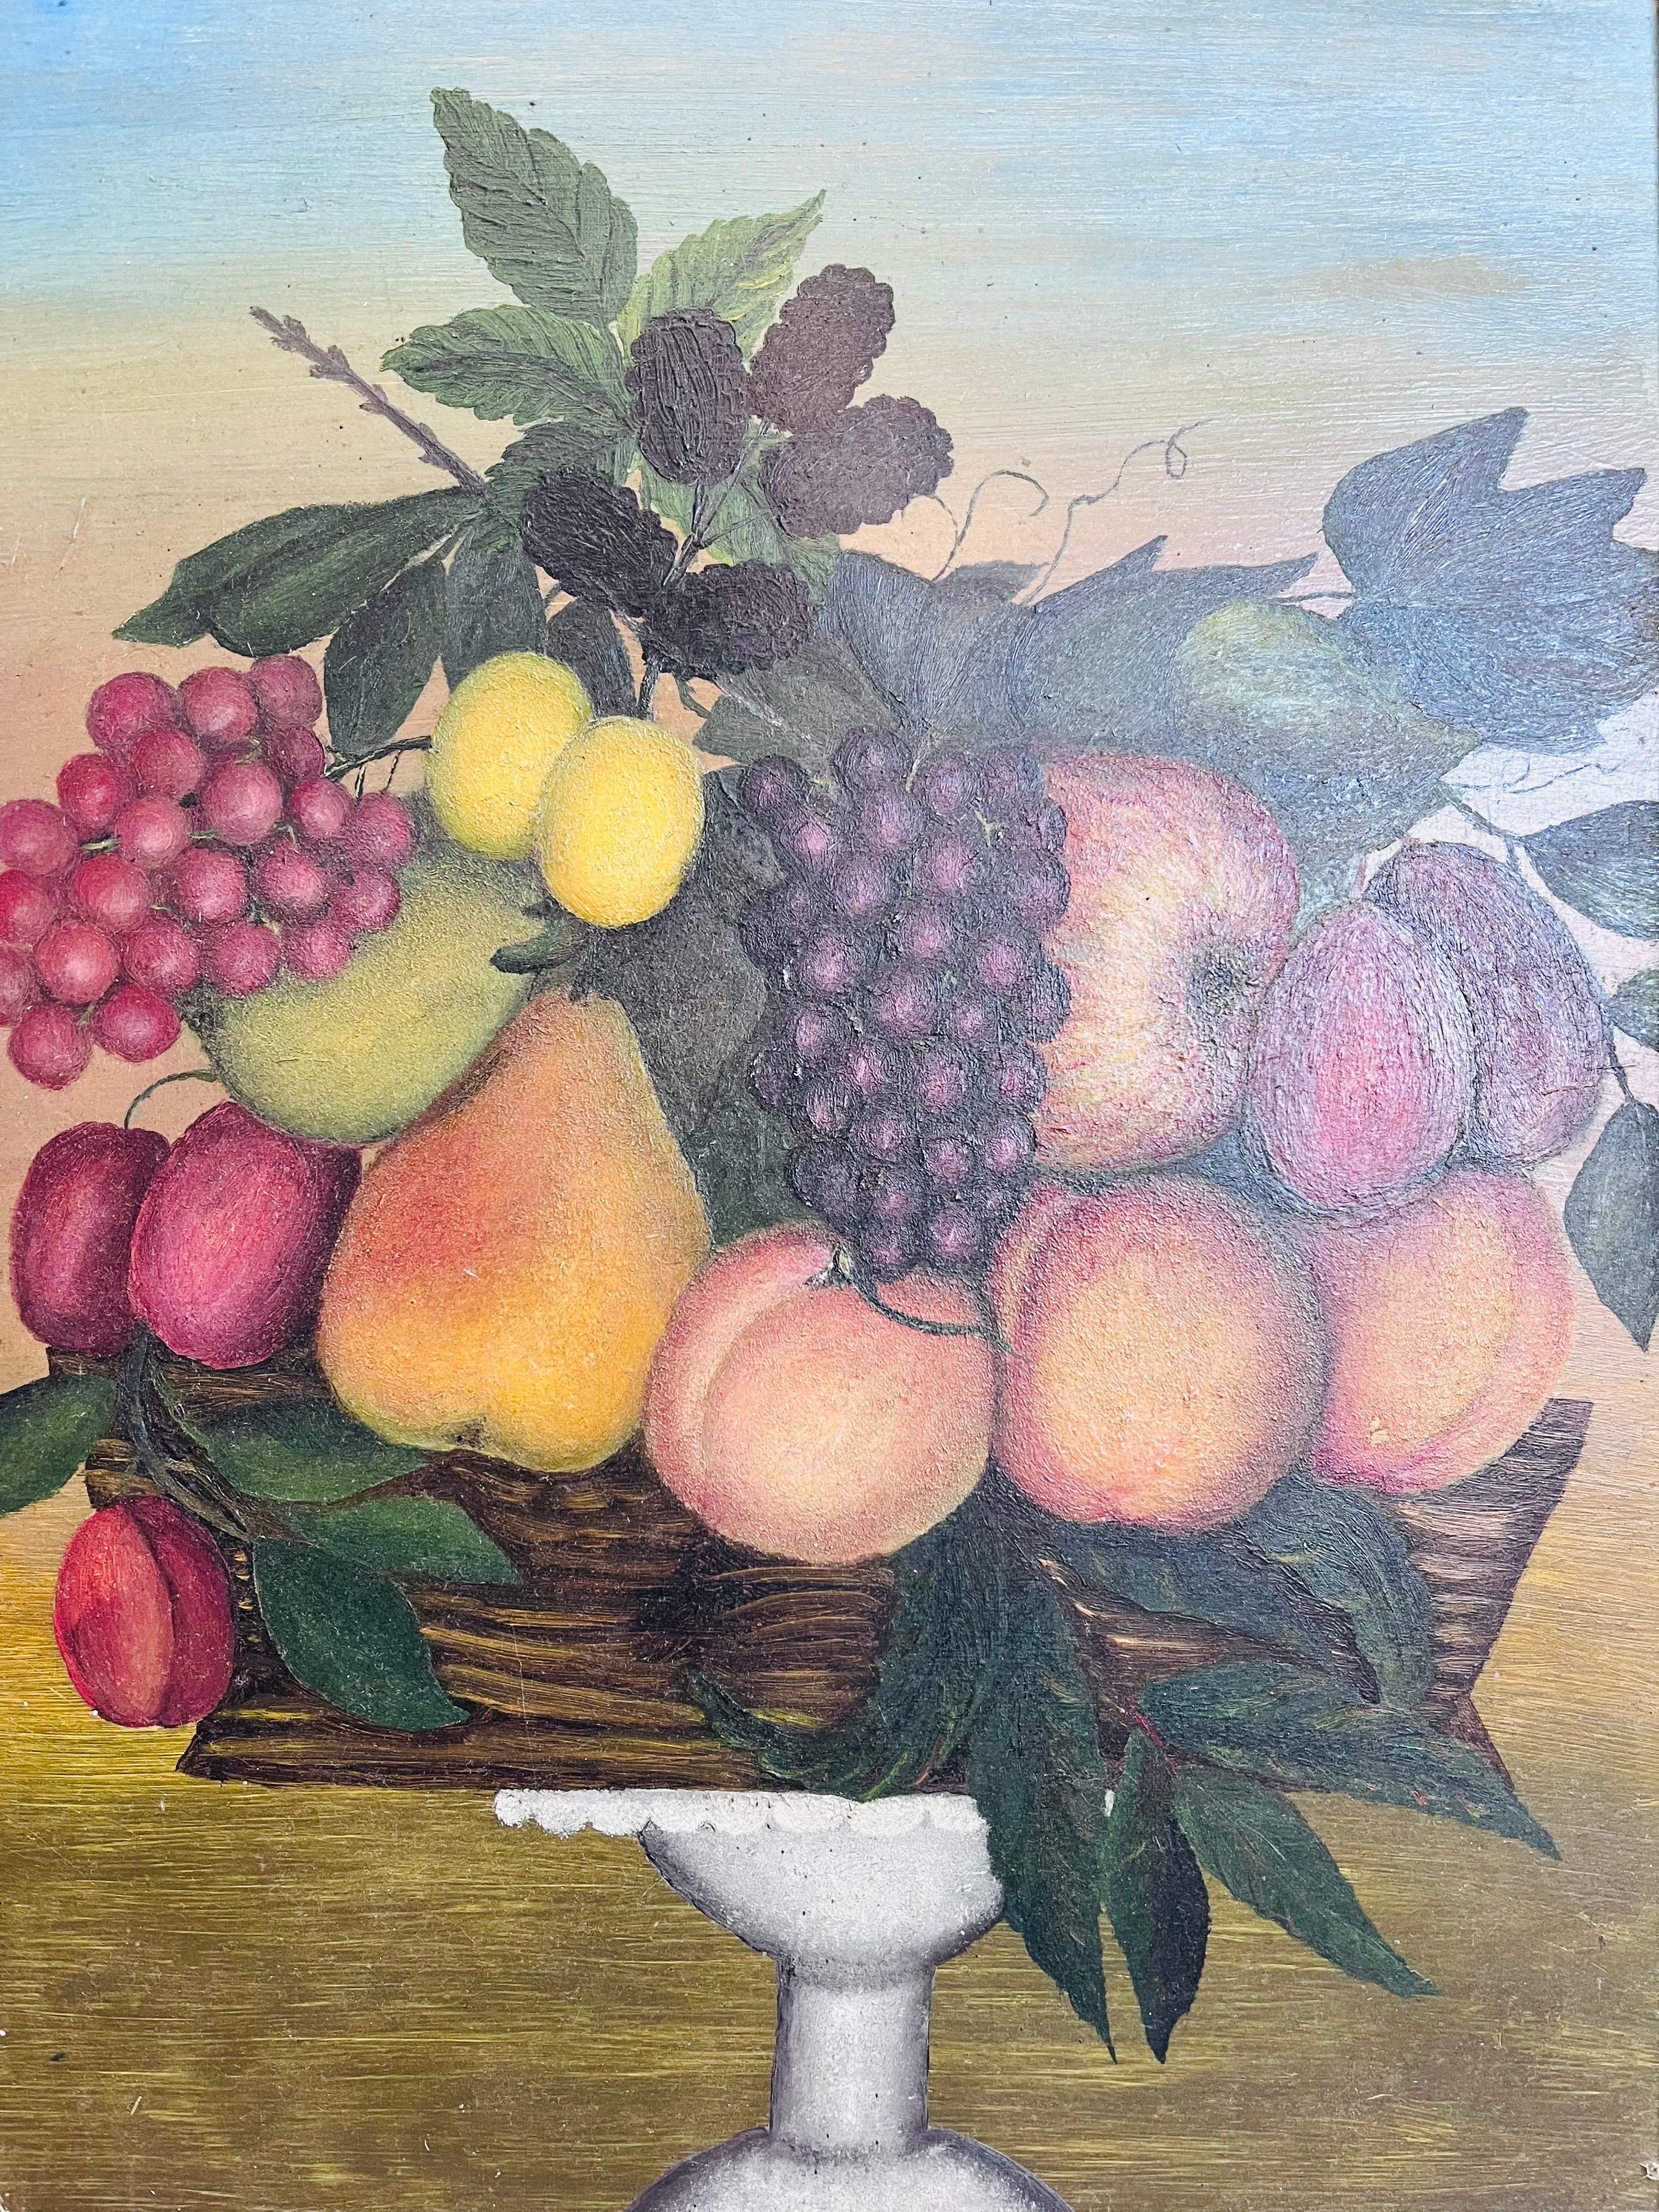 Ein einzigartiges Gemälde im Stil der amerikanischen naiven Volkskunst aus der Mitte des späten 19. Jahrhunderts, das ein Obststillleben in einem geflochtenen Korb auf einem weißen Kompott mit Fuß zeigt. Das Gemälde ist in Öl gemalt und befindet